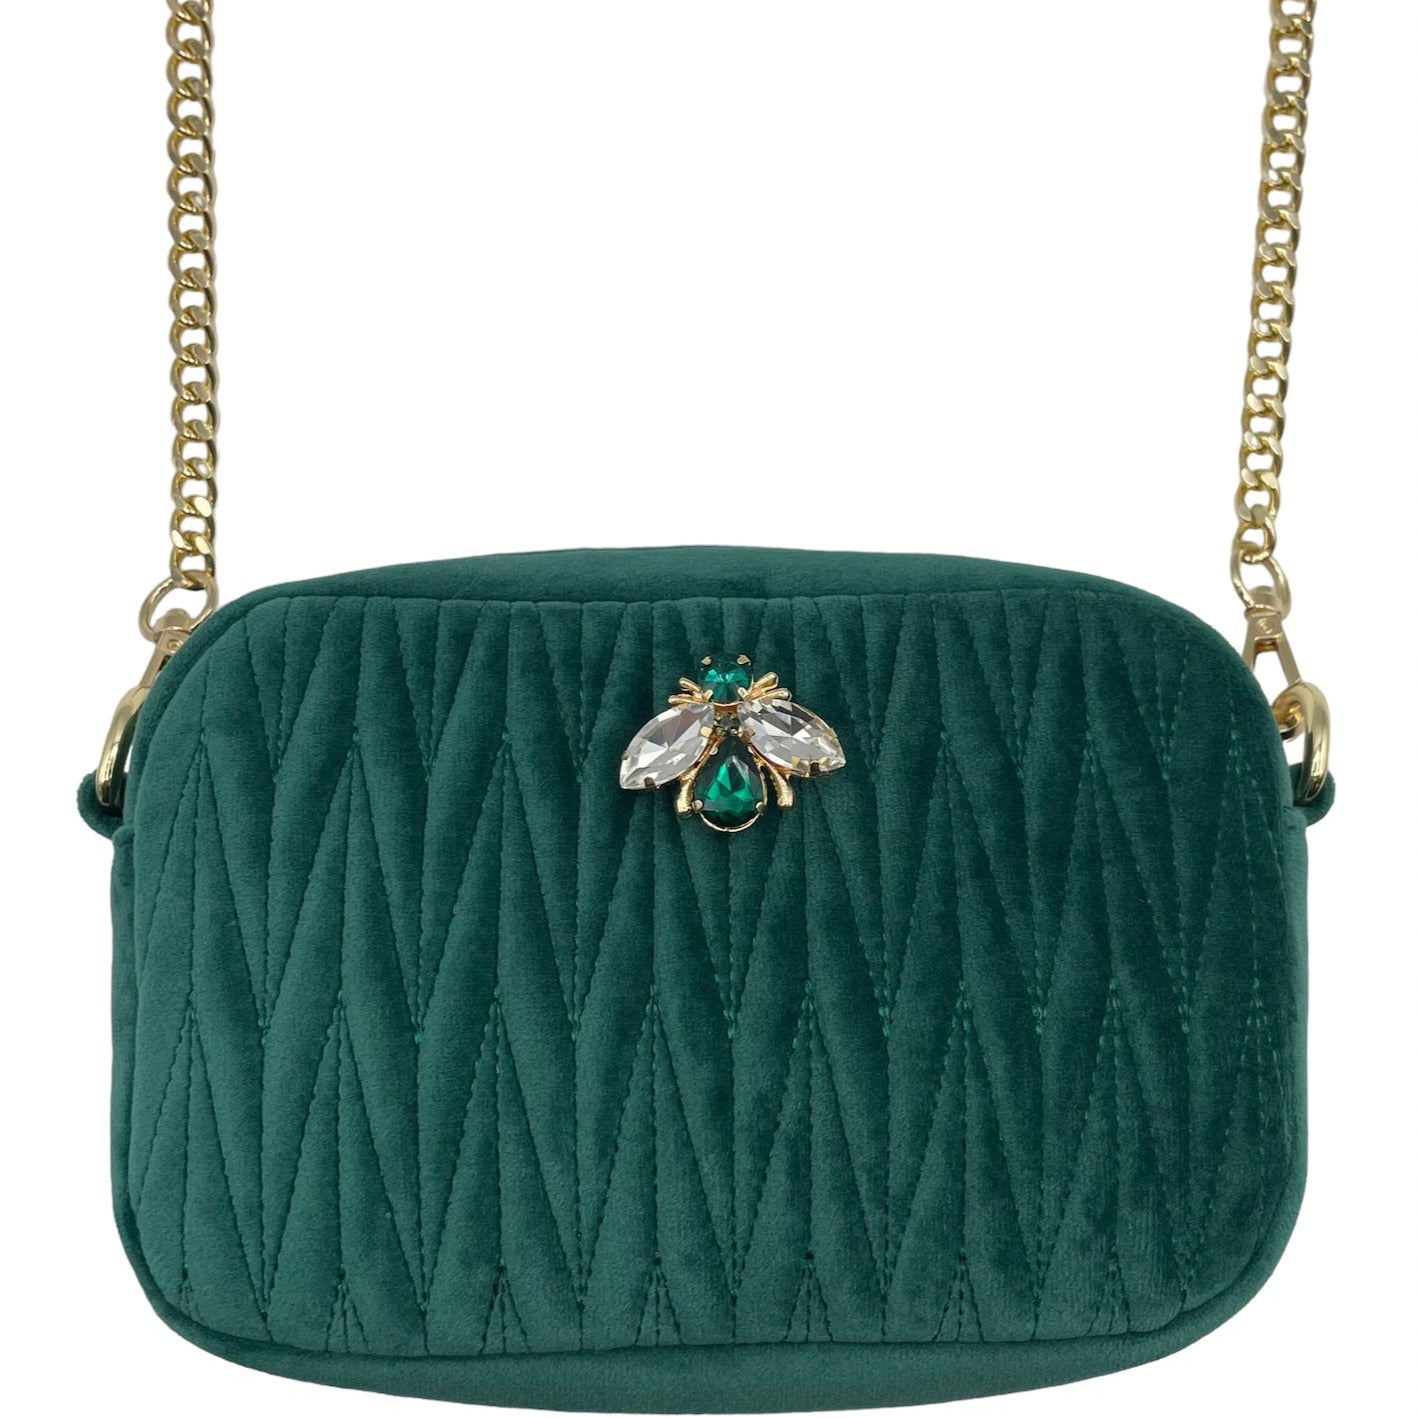 Velvet Rivington Handbag in Green with luna bee pin - recycled velvet